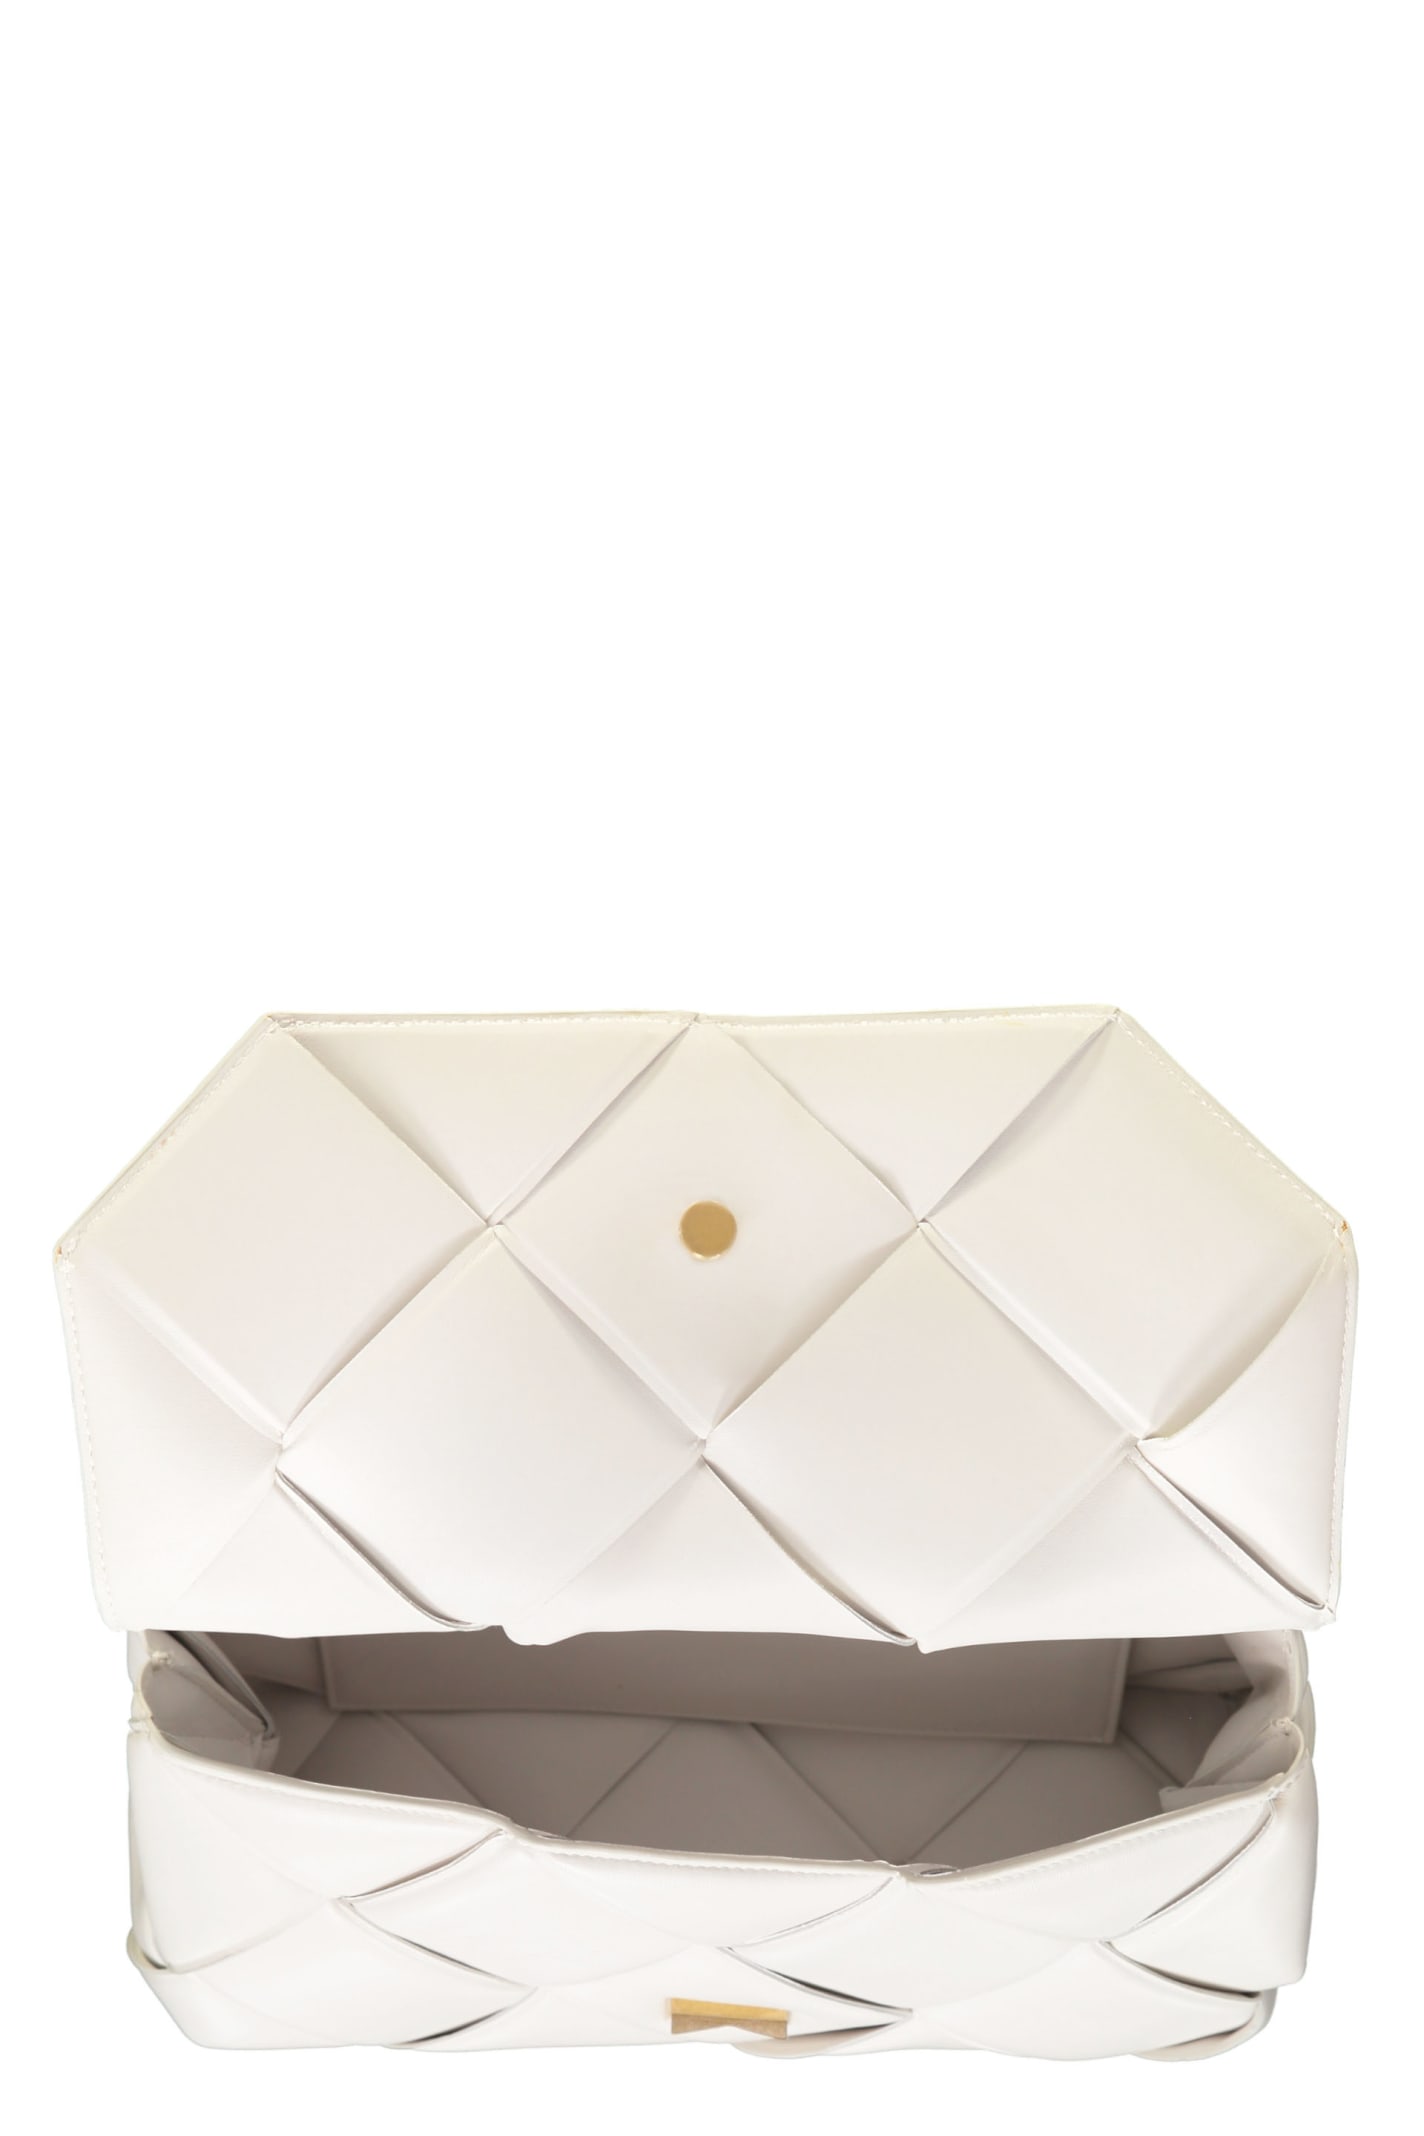 Shop Bottega Veneta Intrecciato Nappa Handbag In White